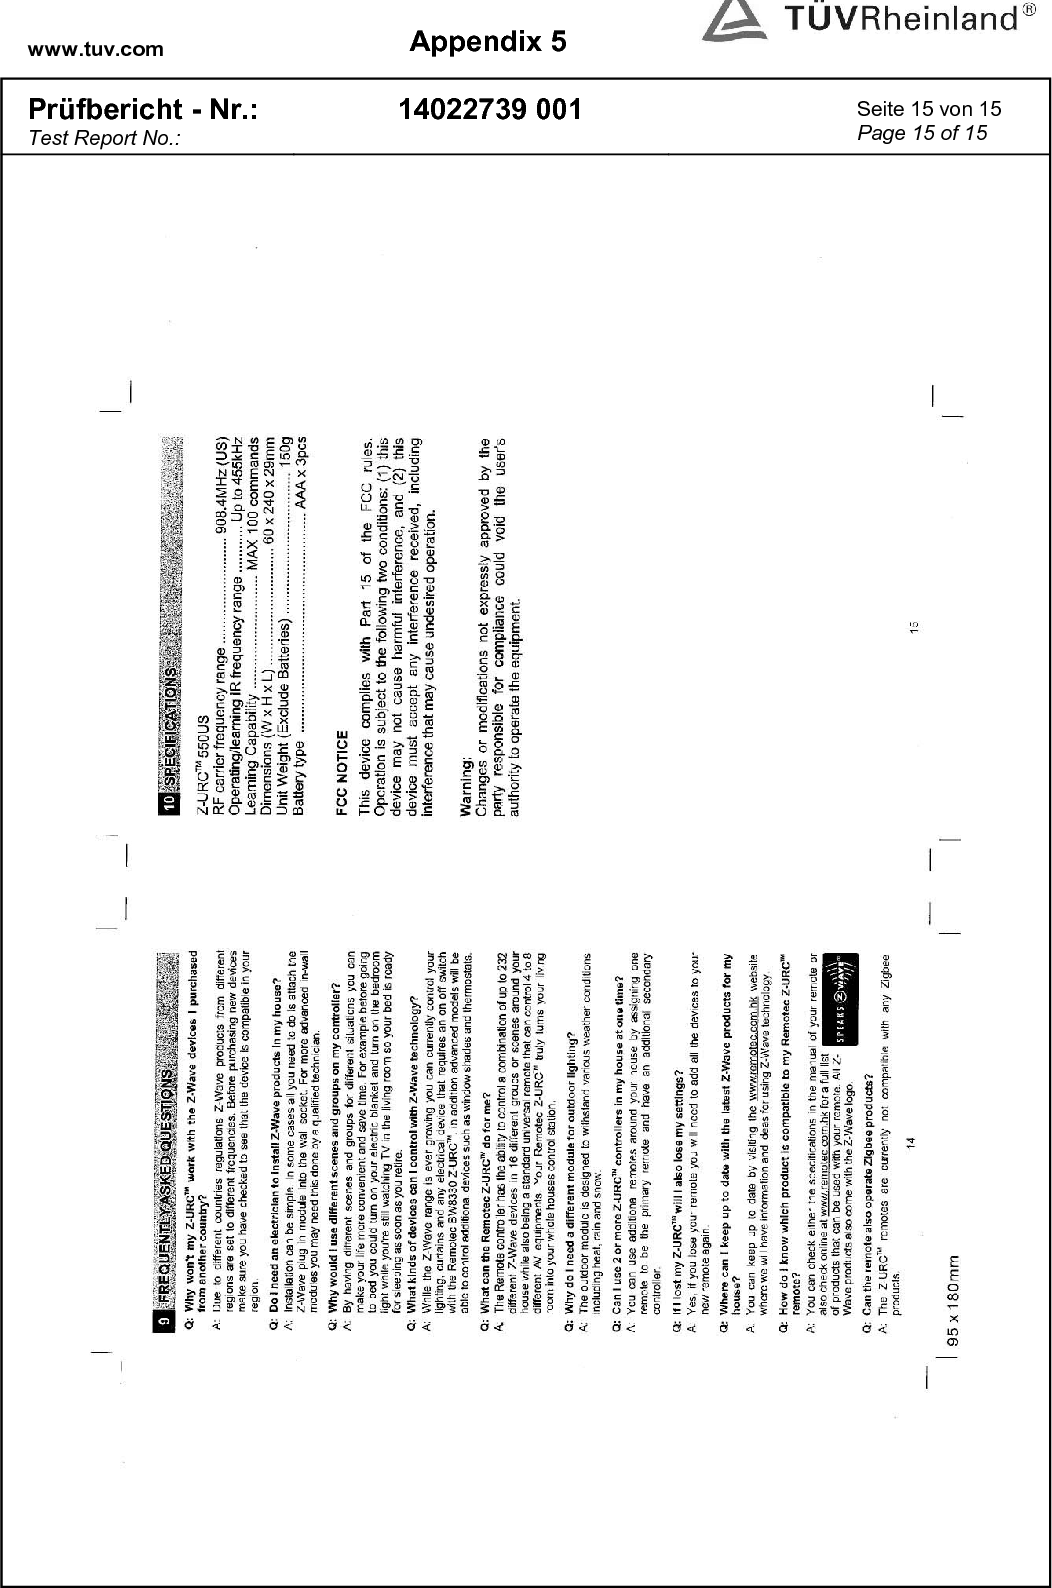 www.tuv.com  Appendix 5  Prüfbericht - Nr.: Test Report No.: 14022739 001  Seite 15 von 15 Page 15 of 15    